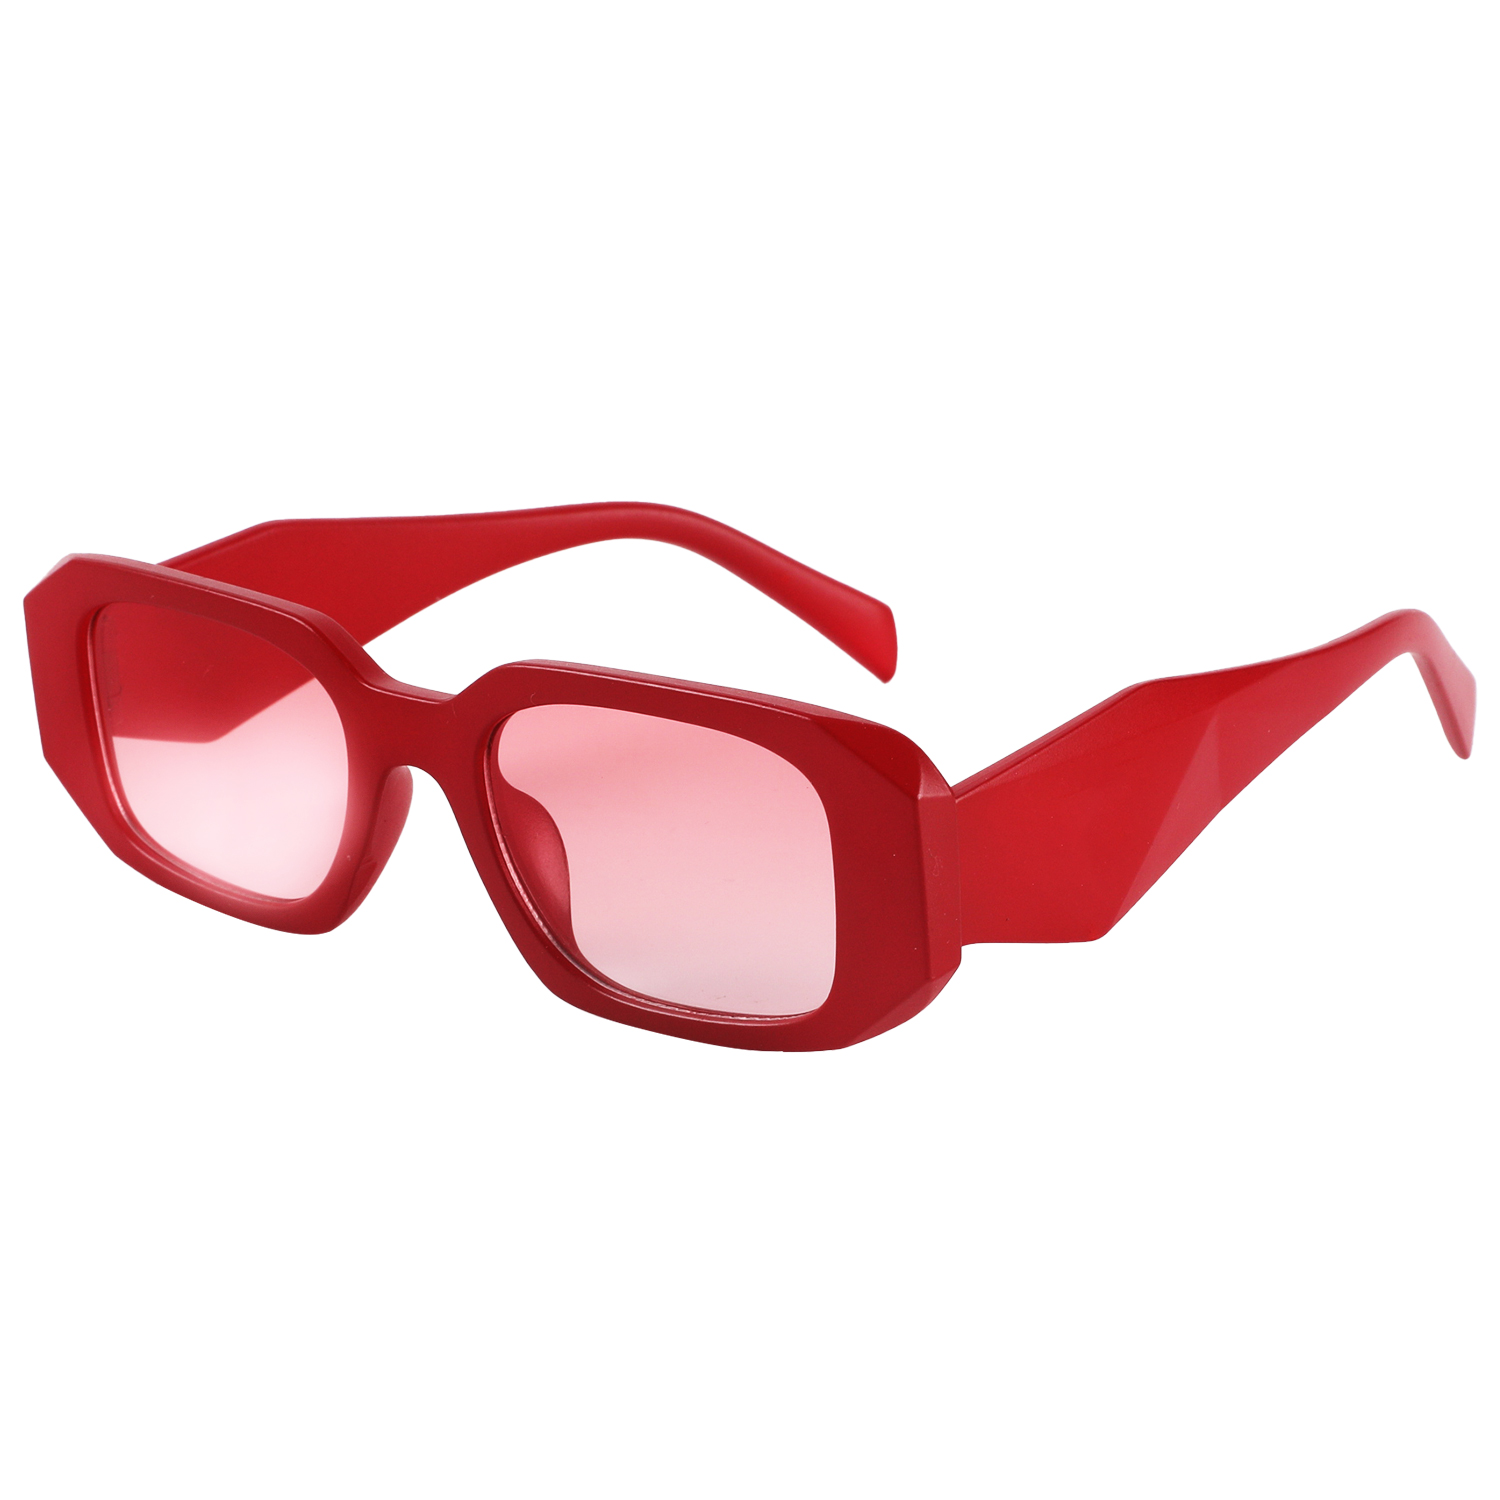 2023年新款时尚太阳眼镜 订制 礼品促销 防紫外线太阳眼镜JB2314详情6